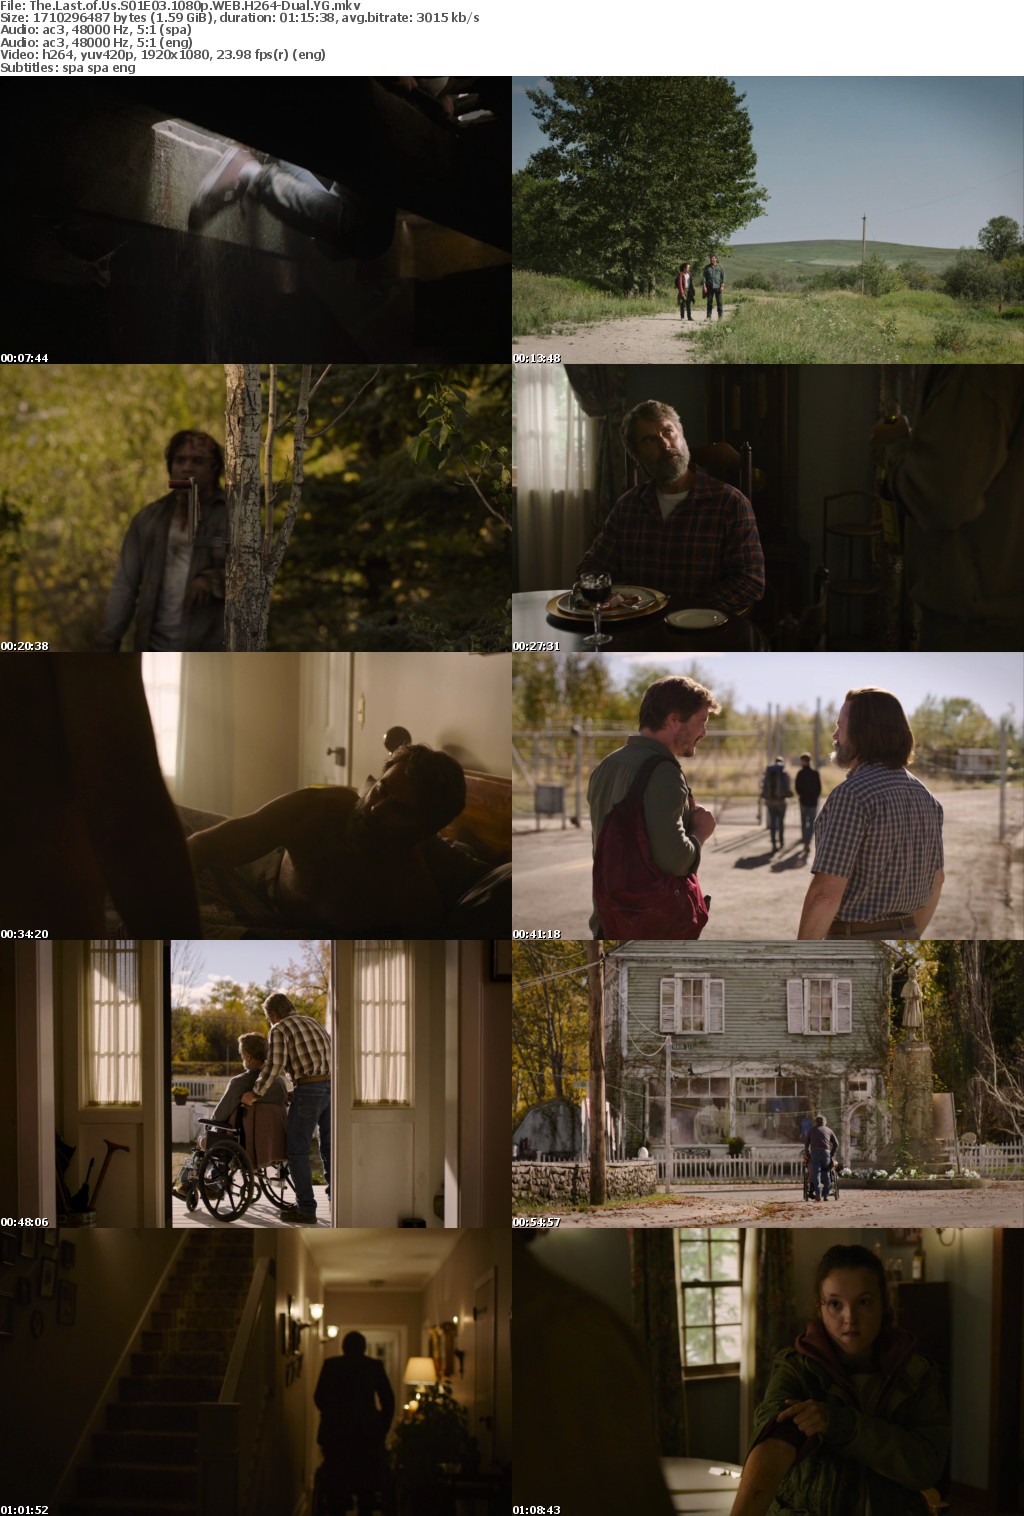 The Last of Us S01E03 e04 e05 1080p WEB H264-Dual YG